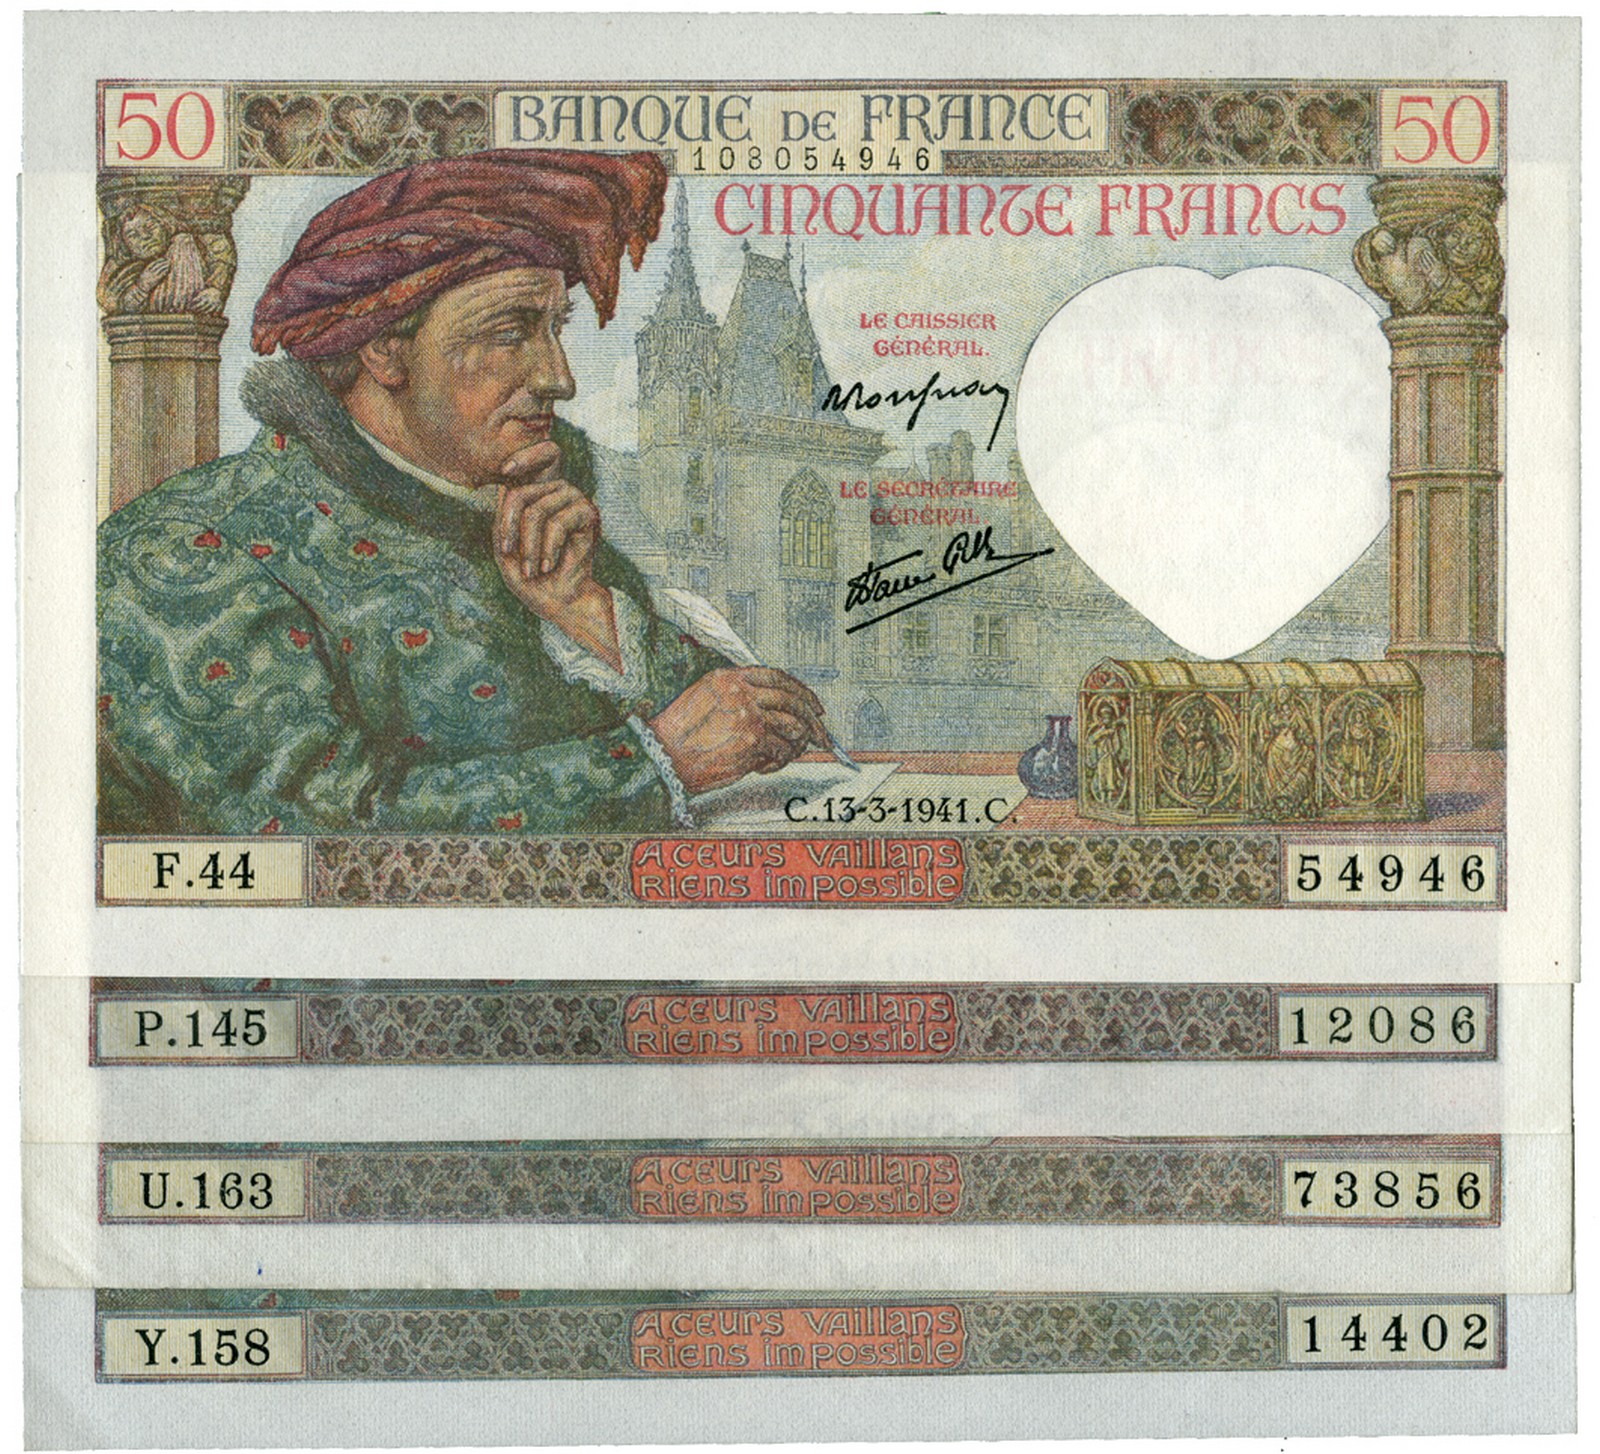 BANKNOTES, 紙鈔, FRANCE, 法國, Banque de France: 50-Francs (4), 13 March 1941, 18 December 1941, 8